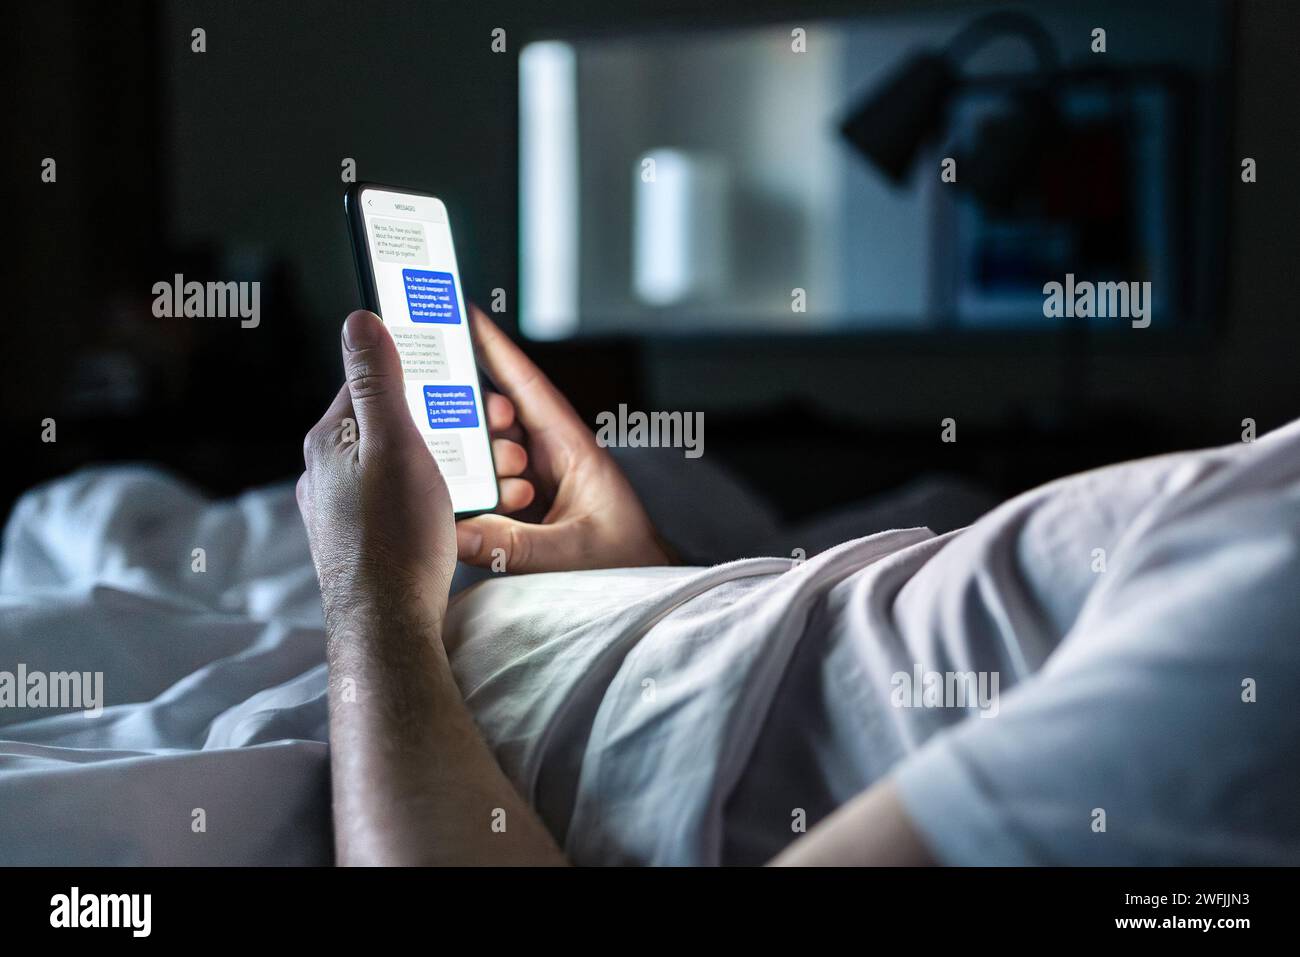 Telefon im Bett. Chat mit Textnachrichten auf dem Smartphone-Bildschirm bei Nacht. Mann im dunklen Schlafzimmer oder Hotelzimmer. Online-Dating, sms-Betrug oder geheim. Stockfoto